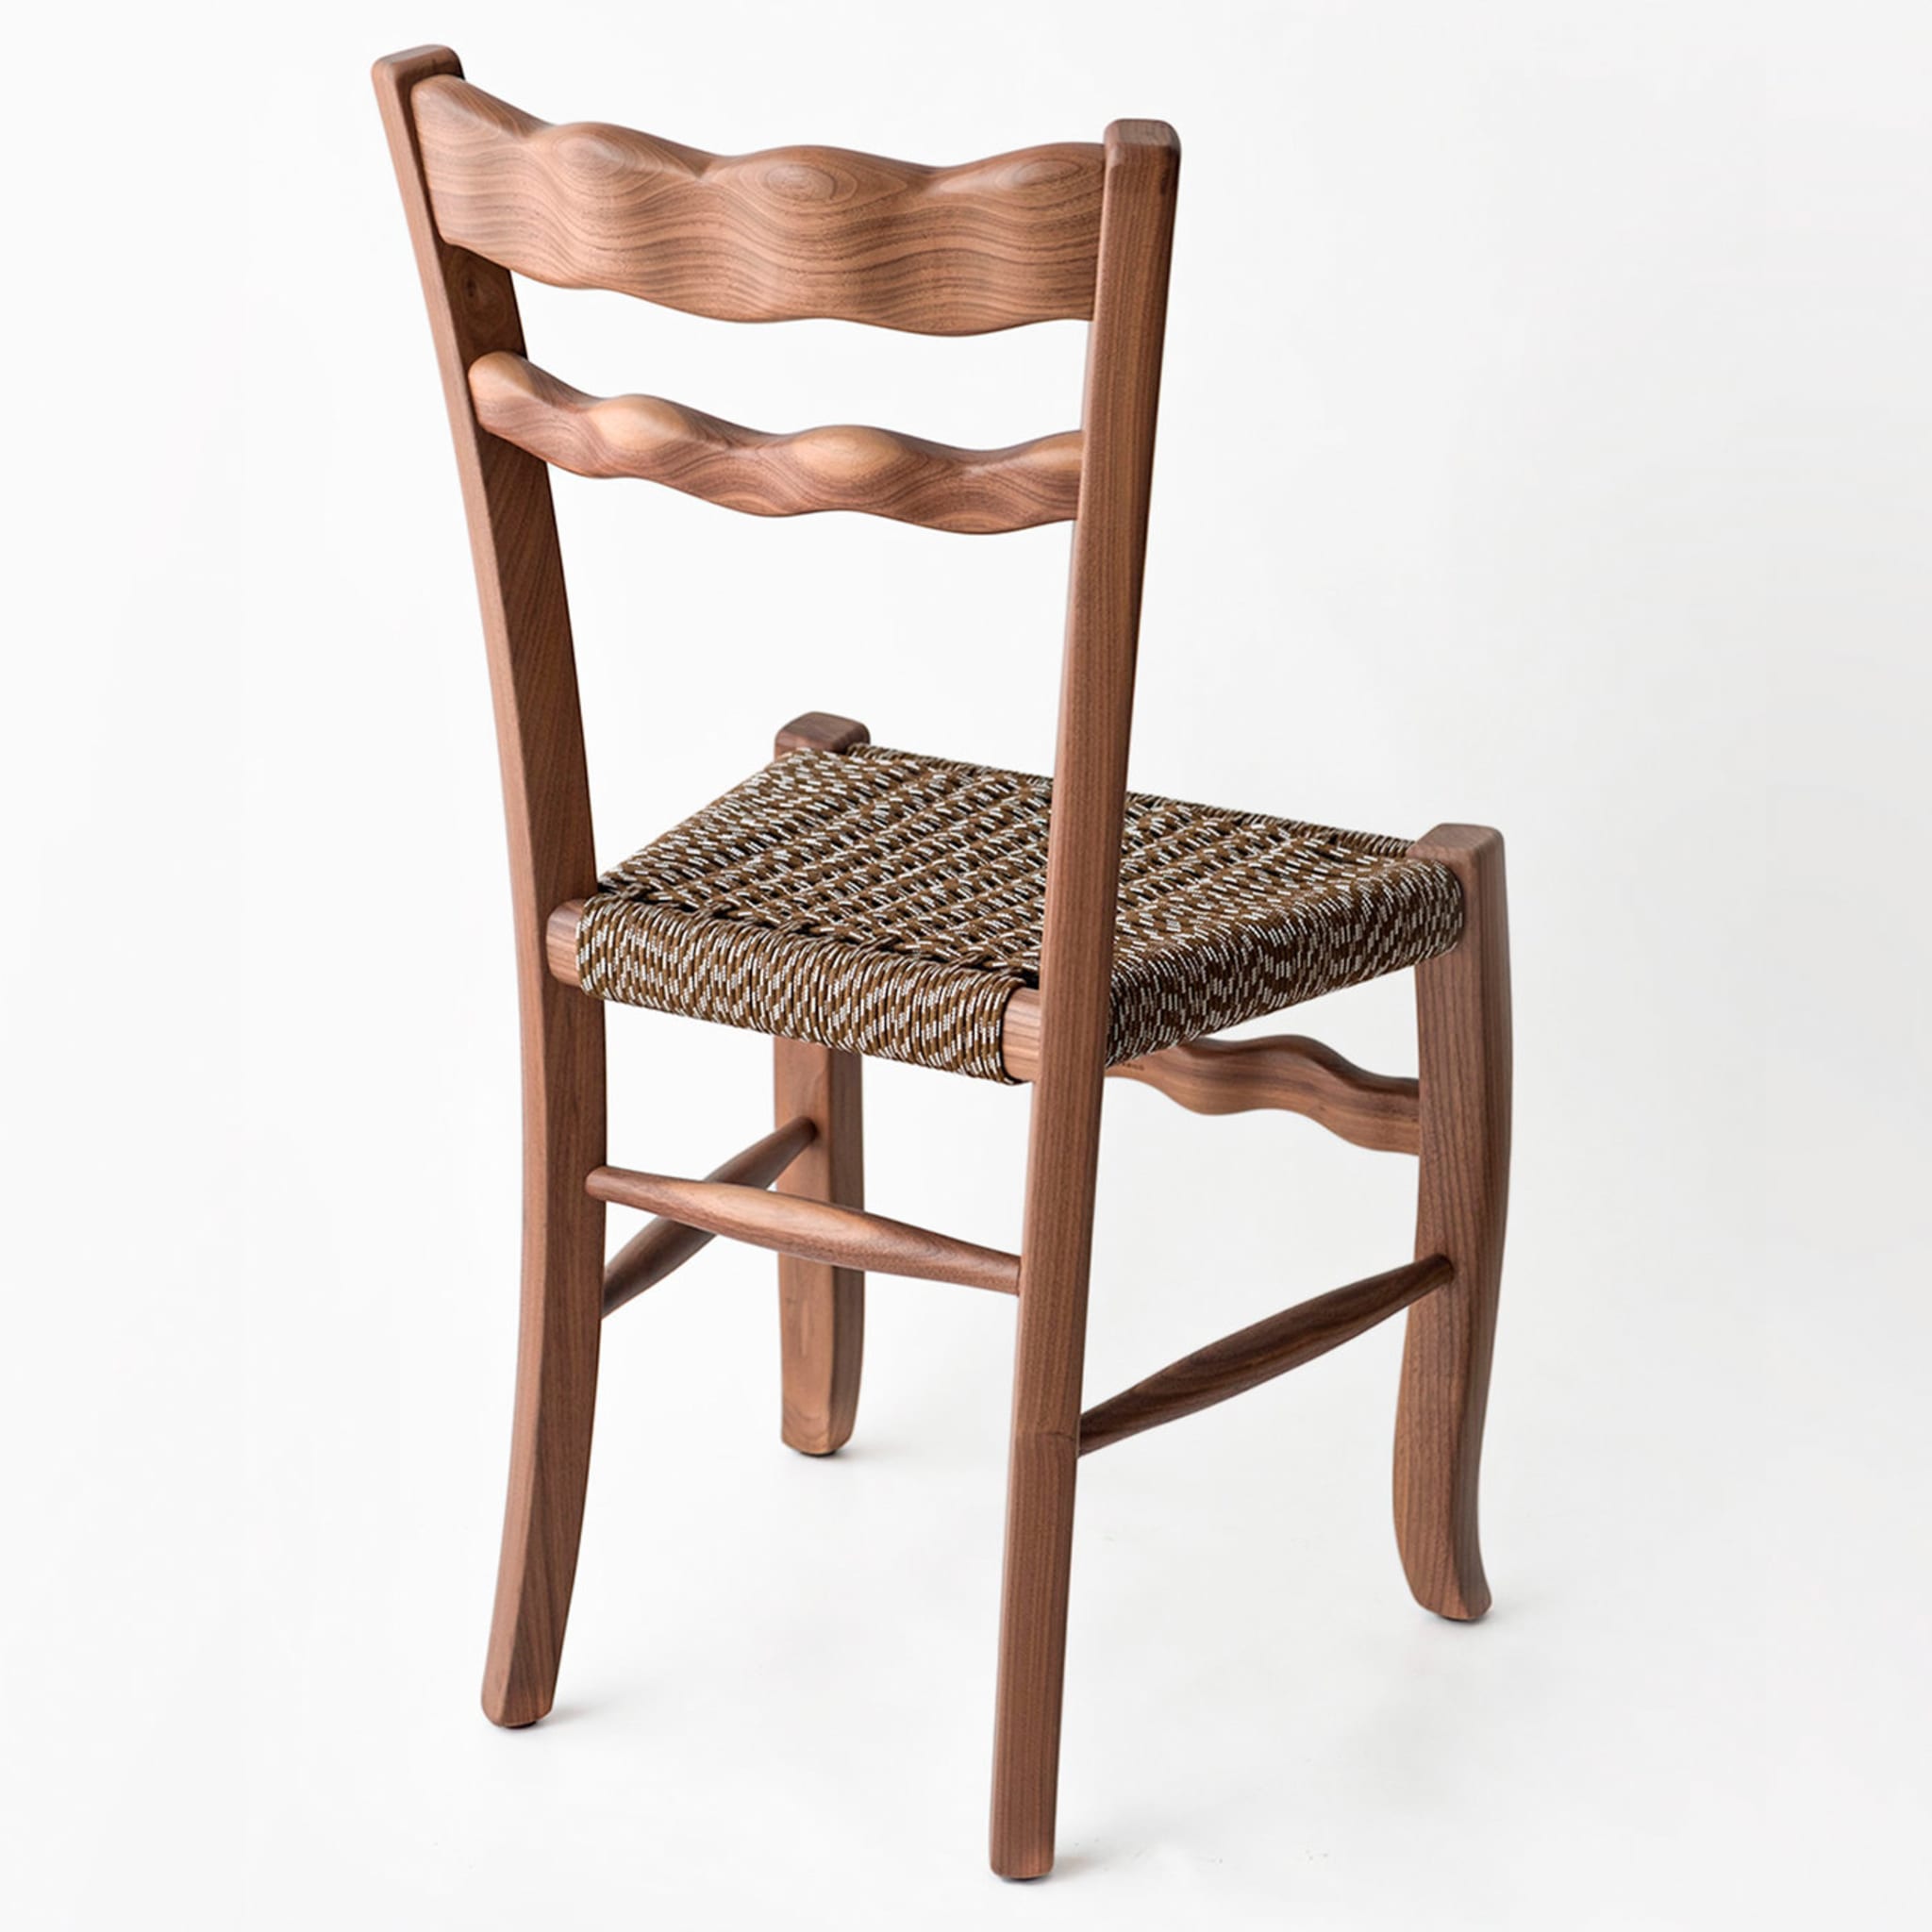 A Signurina Mora Chair by Antonio Aricò - Alternative view 2